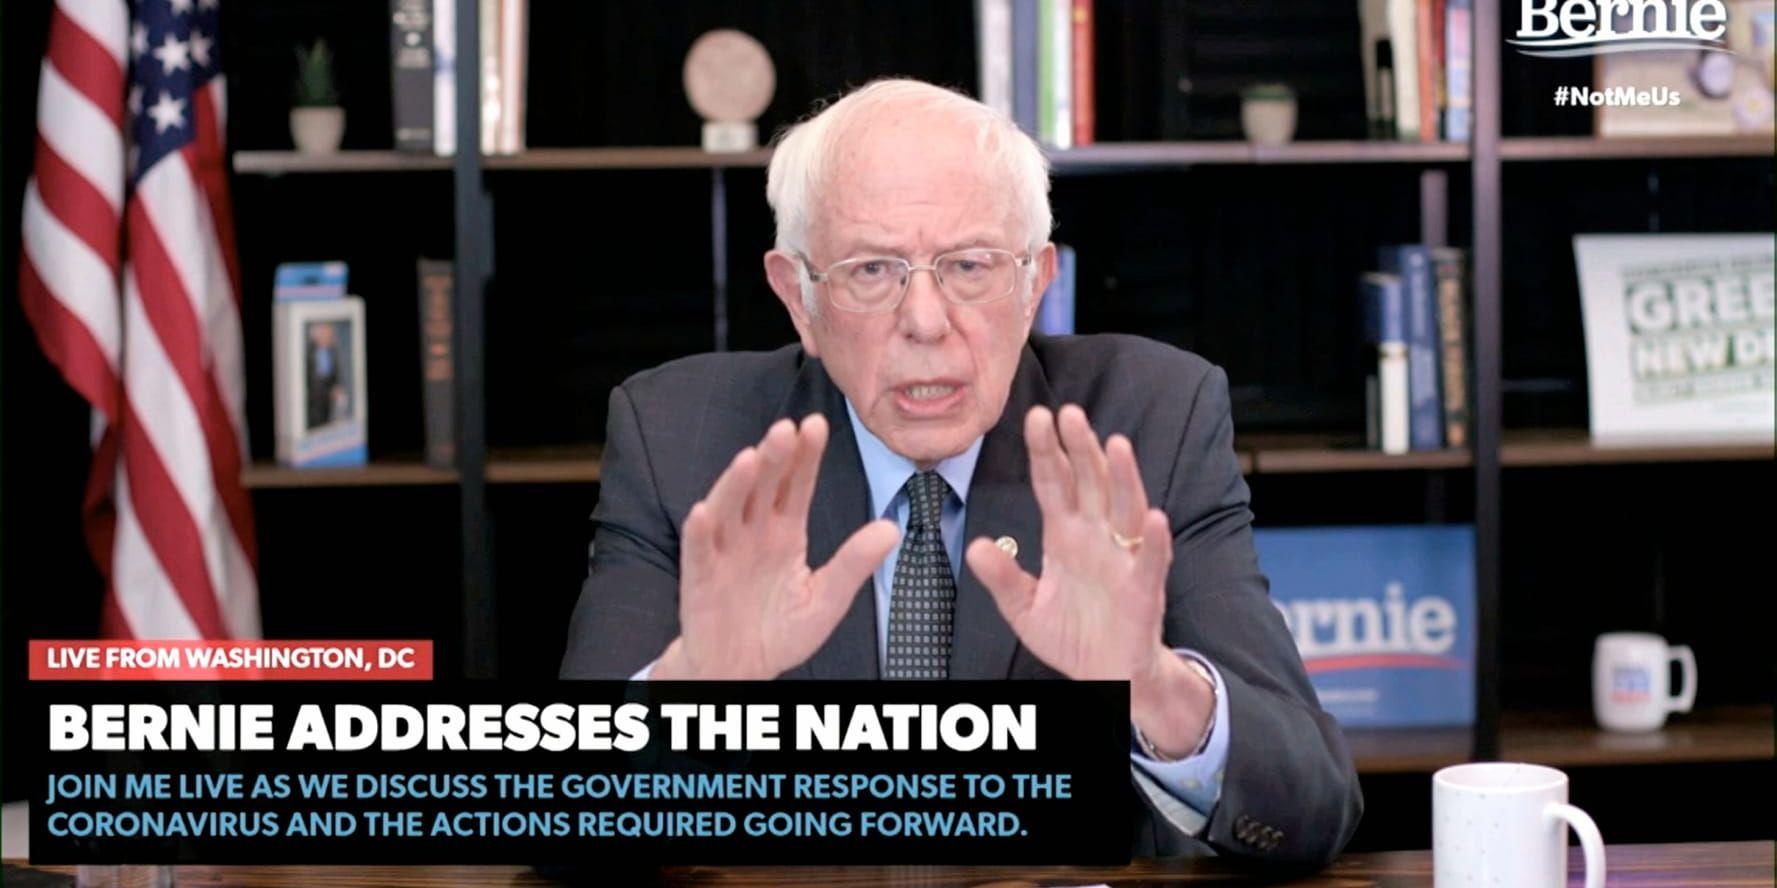 Presidentaspiranten och Vermontsenatorn Bernie Sanders håller ett tal via videolänk från Washington DC. 